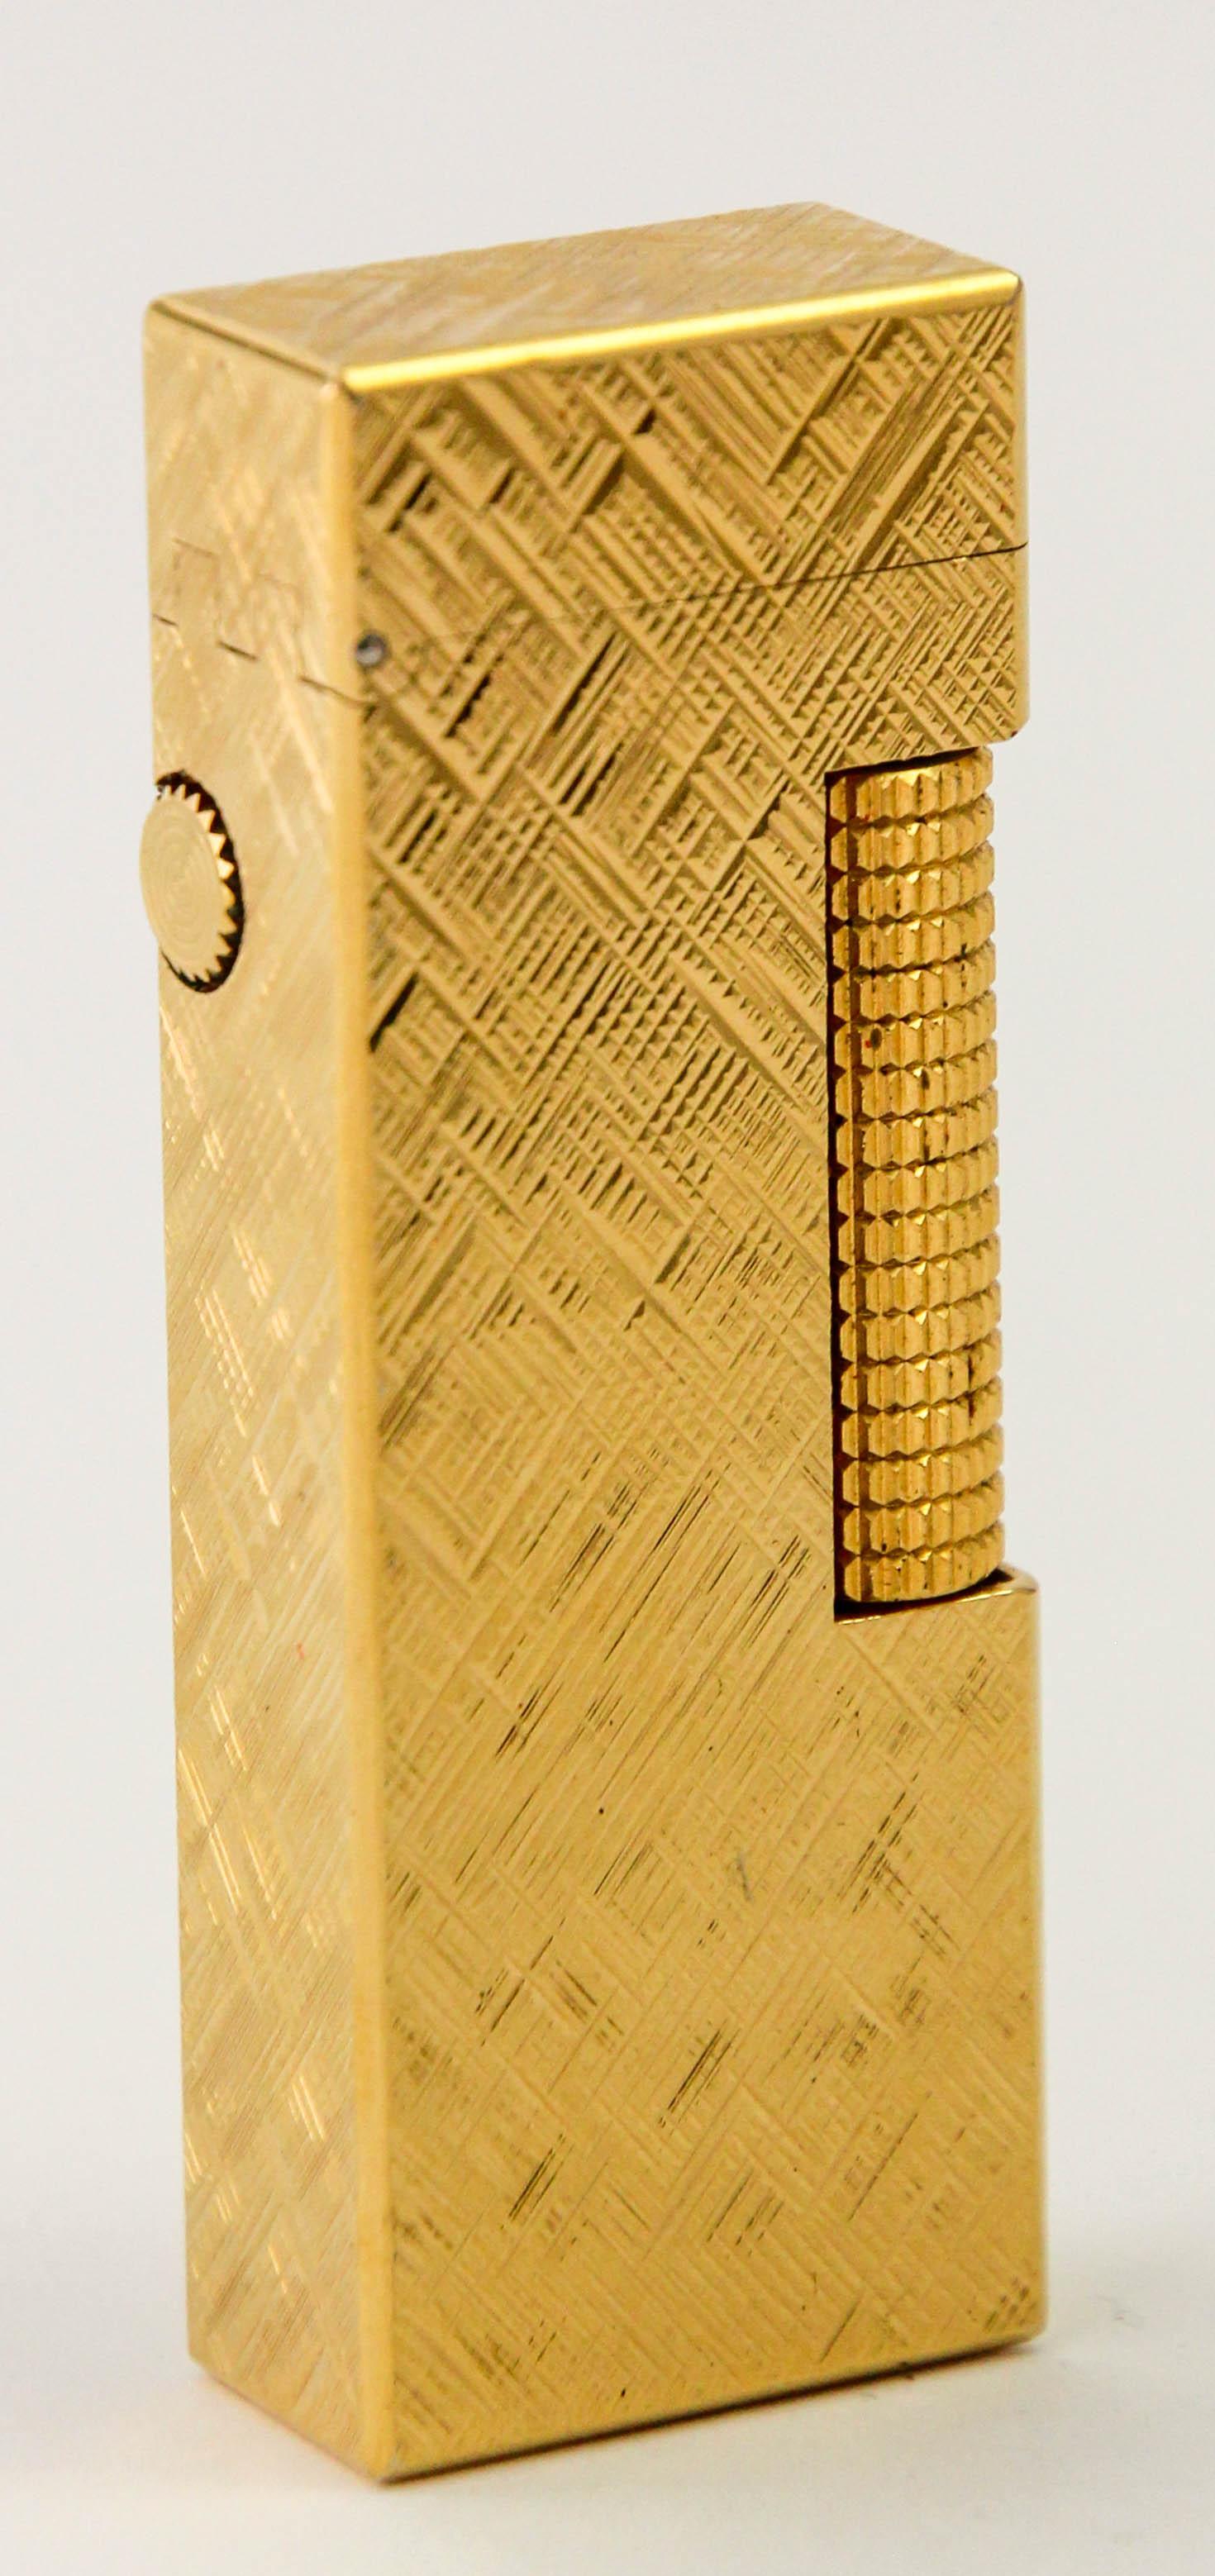 Rare Vintage Iconic Alfred Dunhill Gold Plated Lighter made in Switzerland.Ce magnifique Dunhill Rollagas 24k Gold Plated Florentine Pattern Lighter a été fabriqué dans les années 1980. Il s'agit d'un très bel exemple de la série des Rollagas